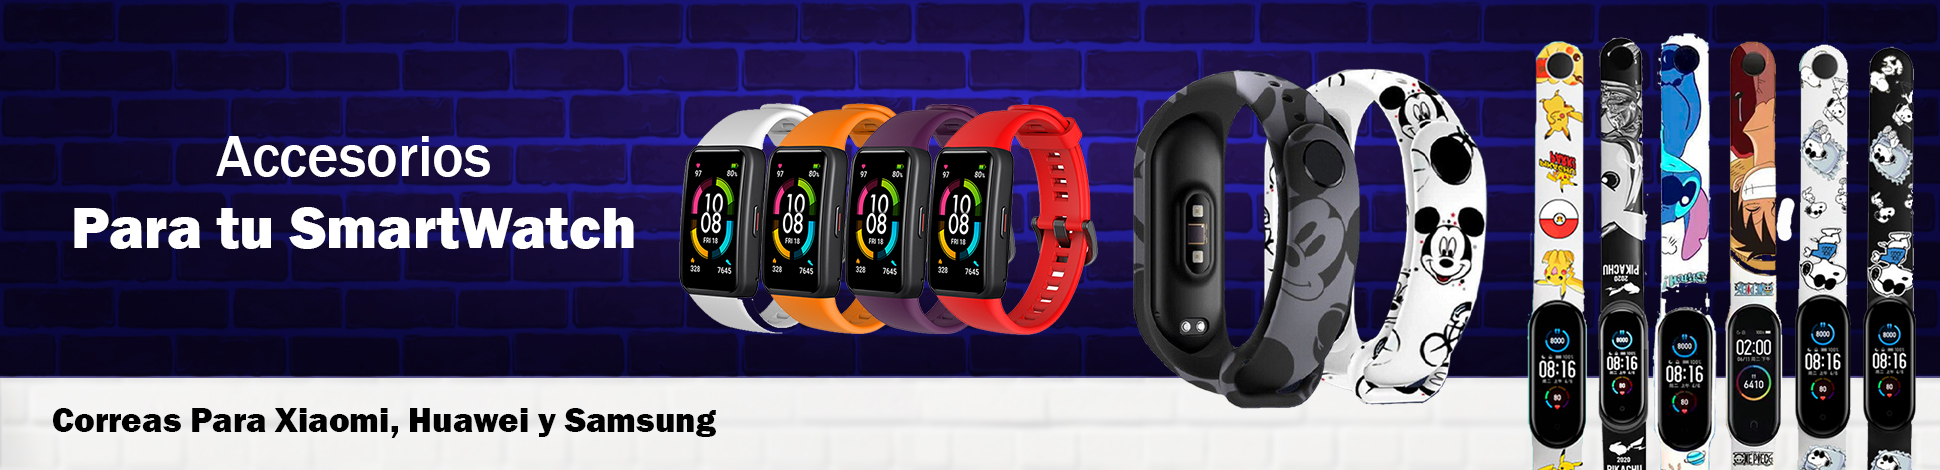 banner desktop accesorios para smartwatch correas.jpg